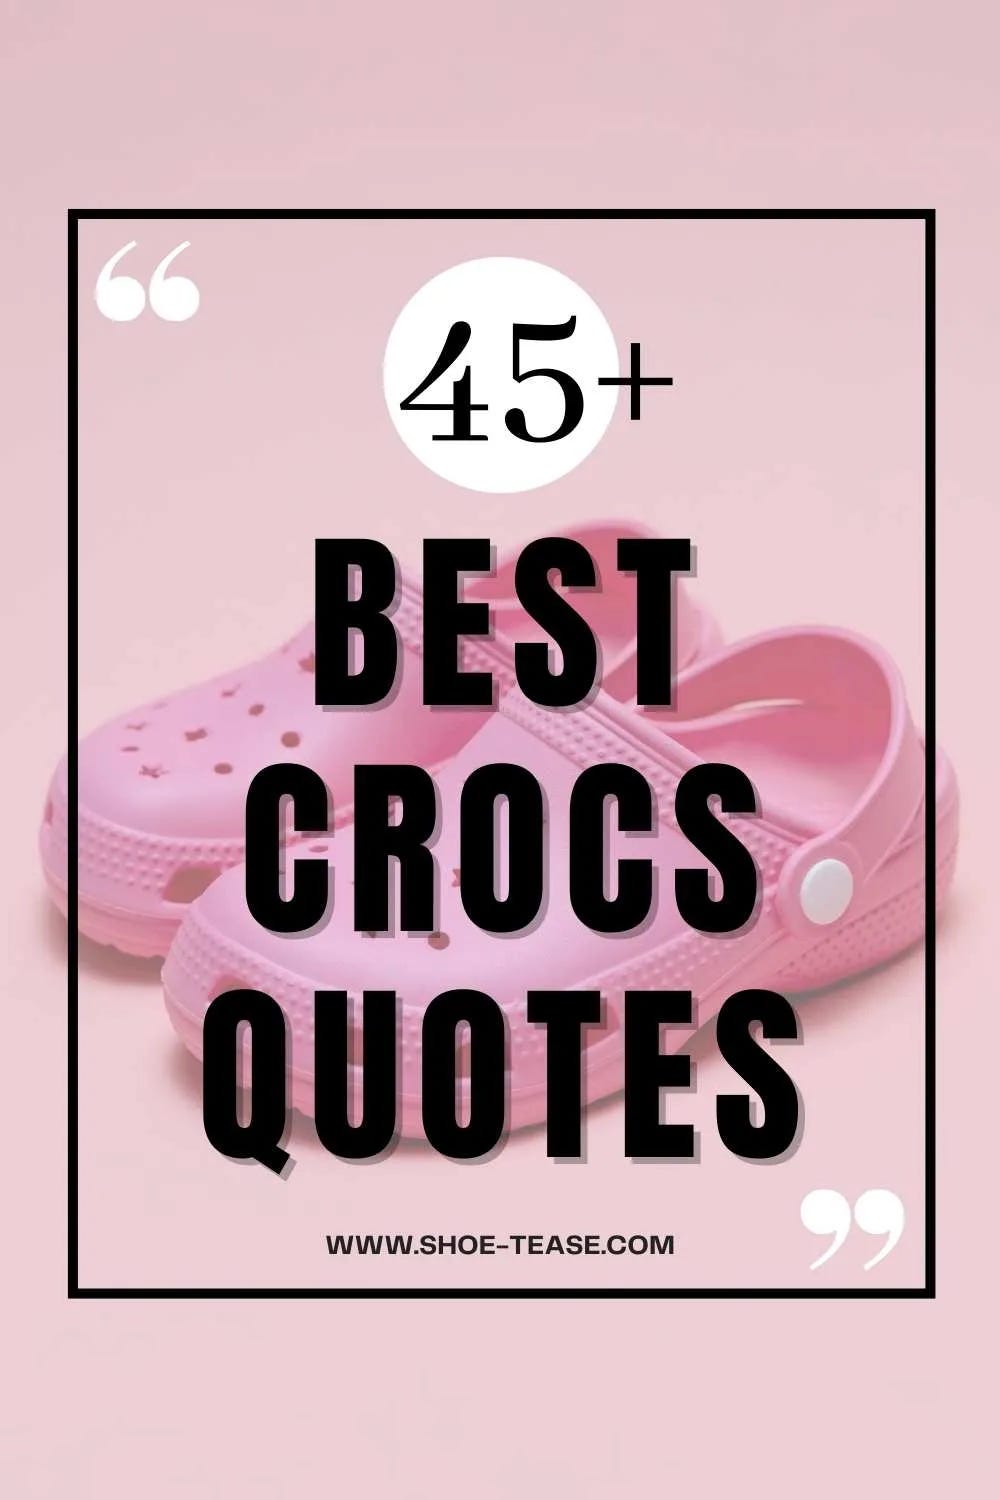 crocs slogan